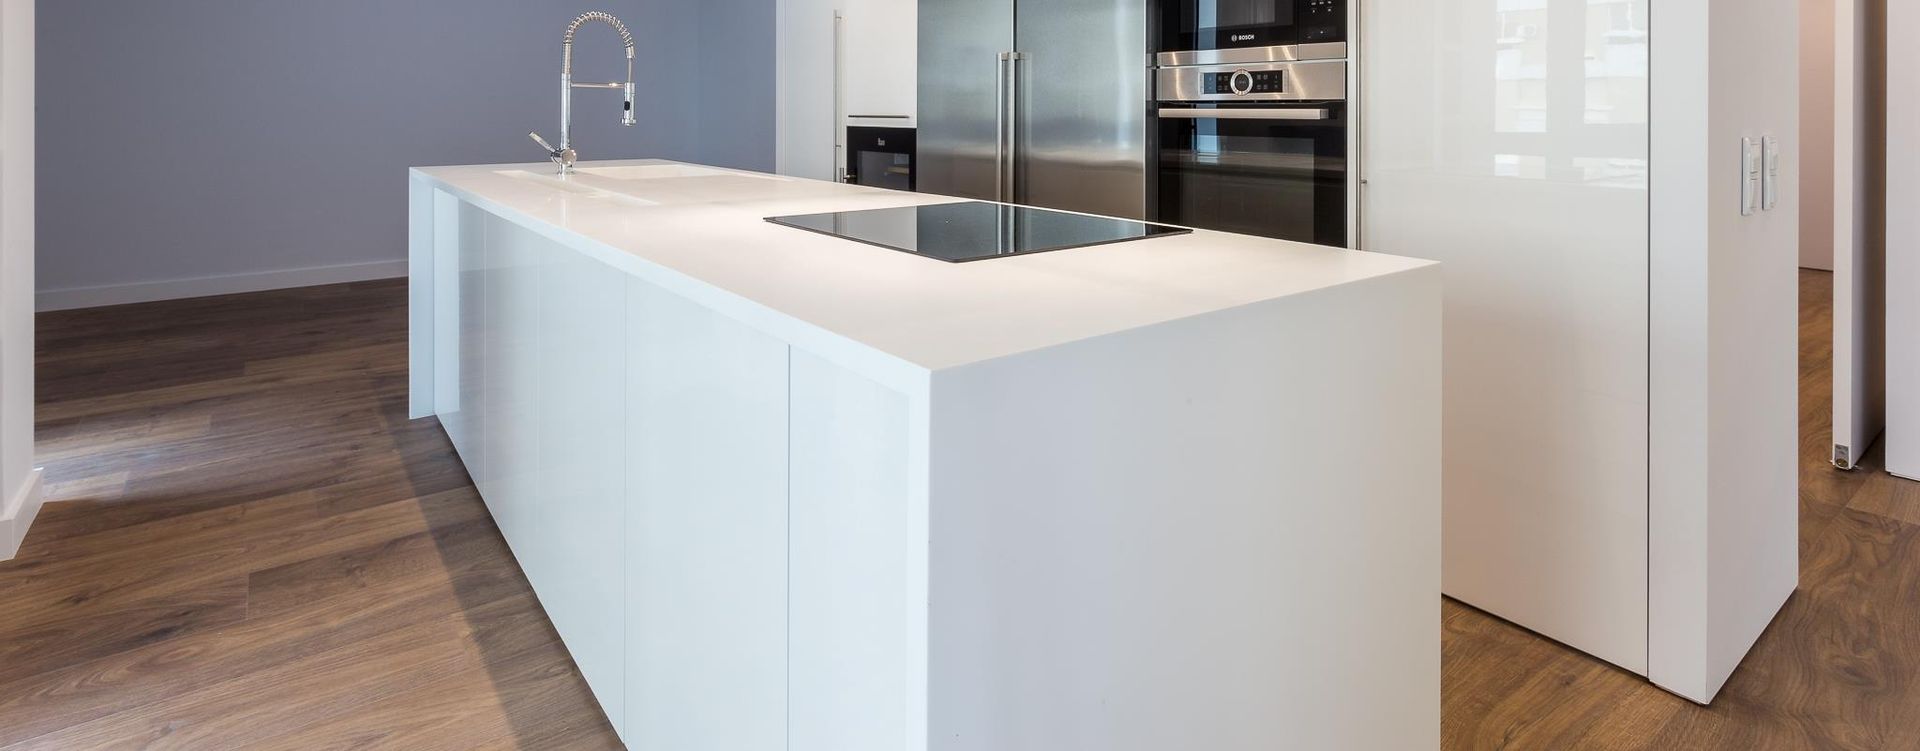 Projeto de cozinha com chão em mdadeira, DIONI Home Design DIONI Home Design Nhà bếp phong cách hiện đại MDF Cabinets & shelves